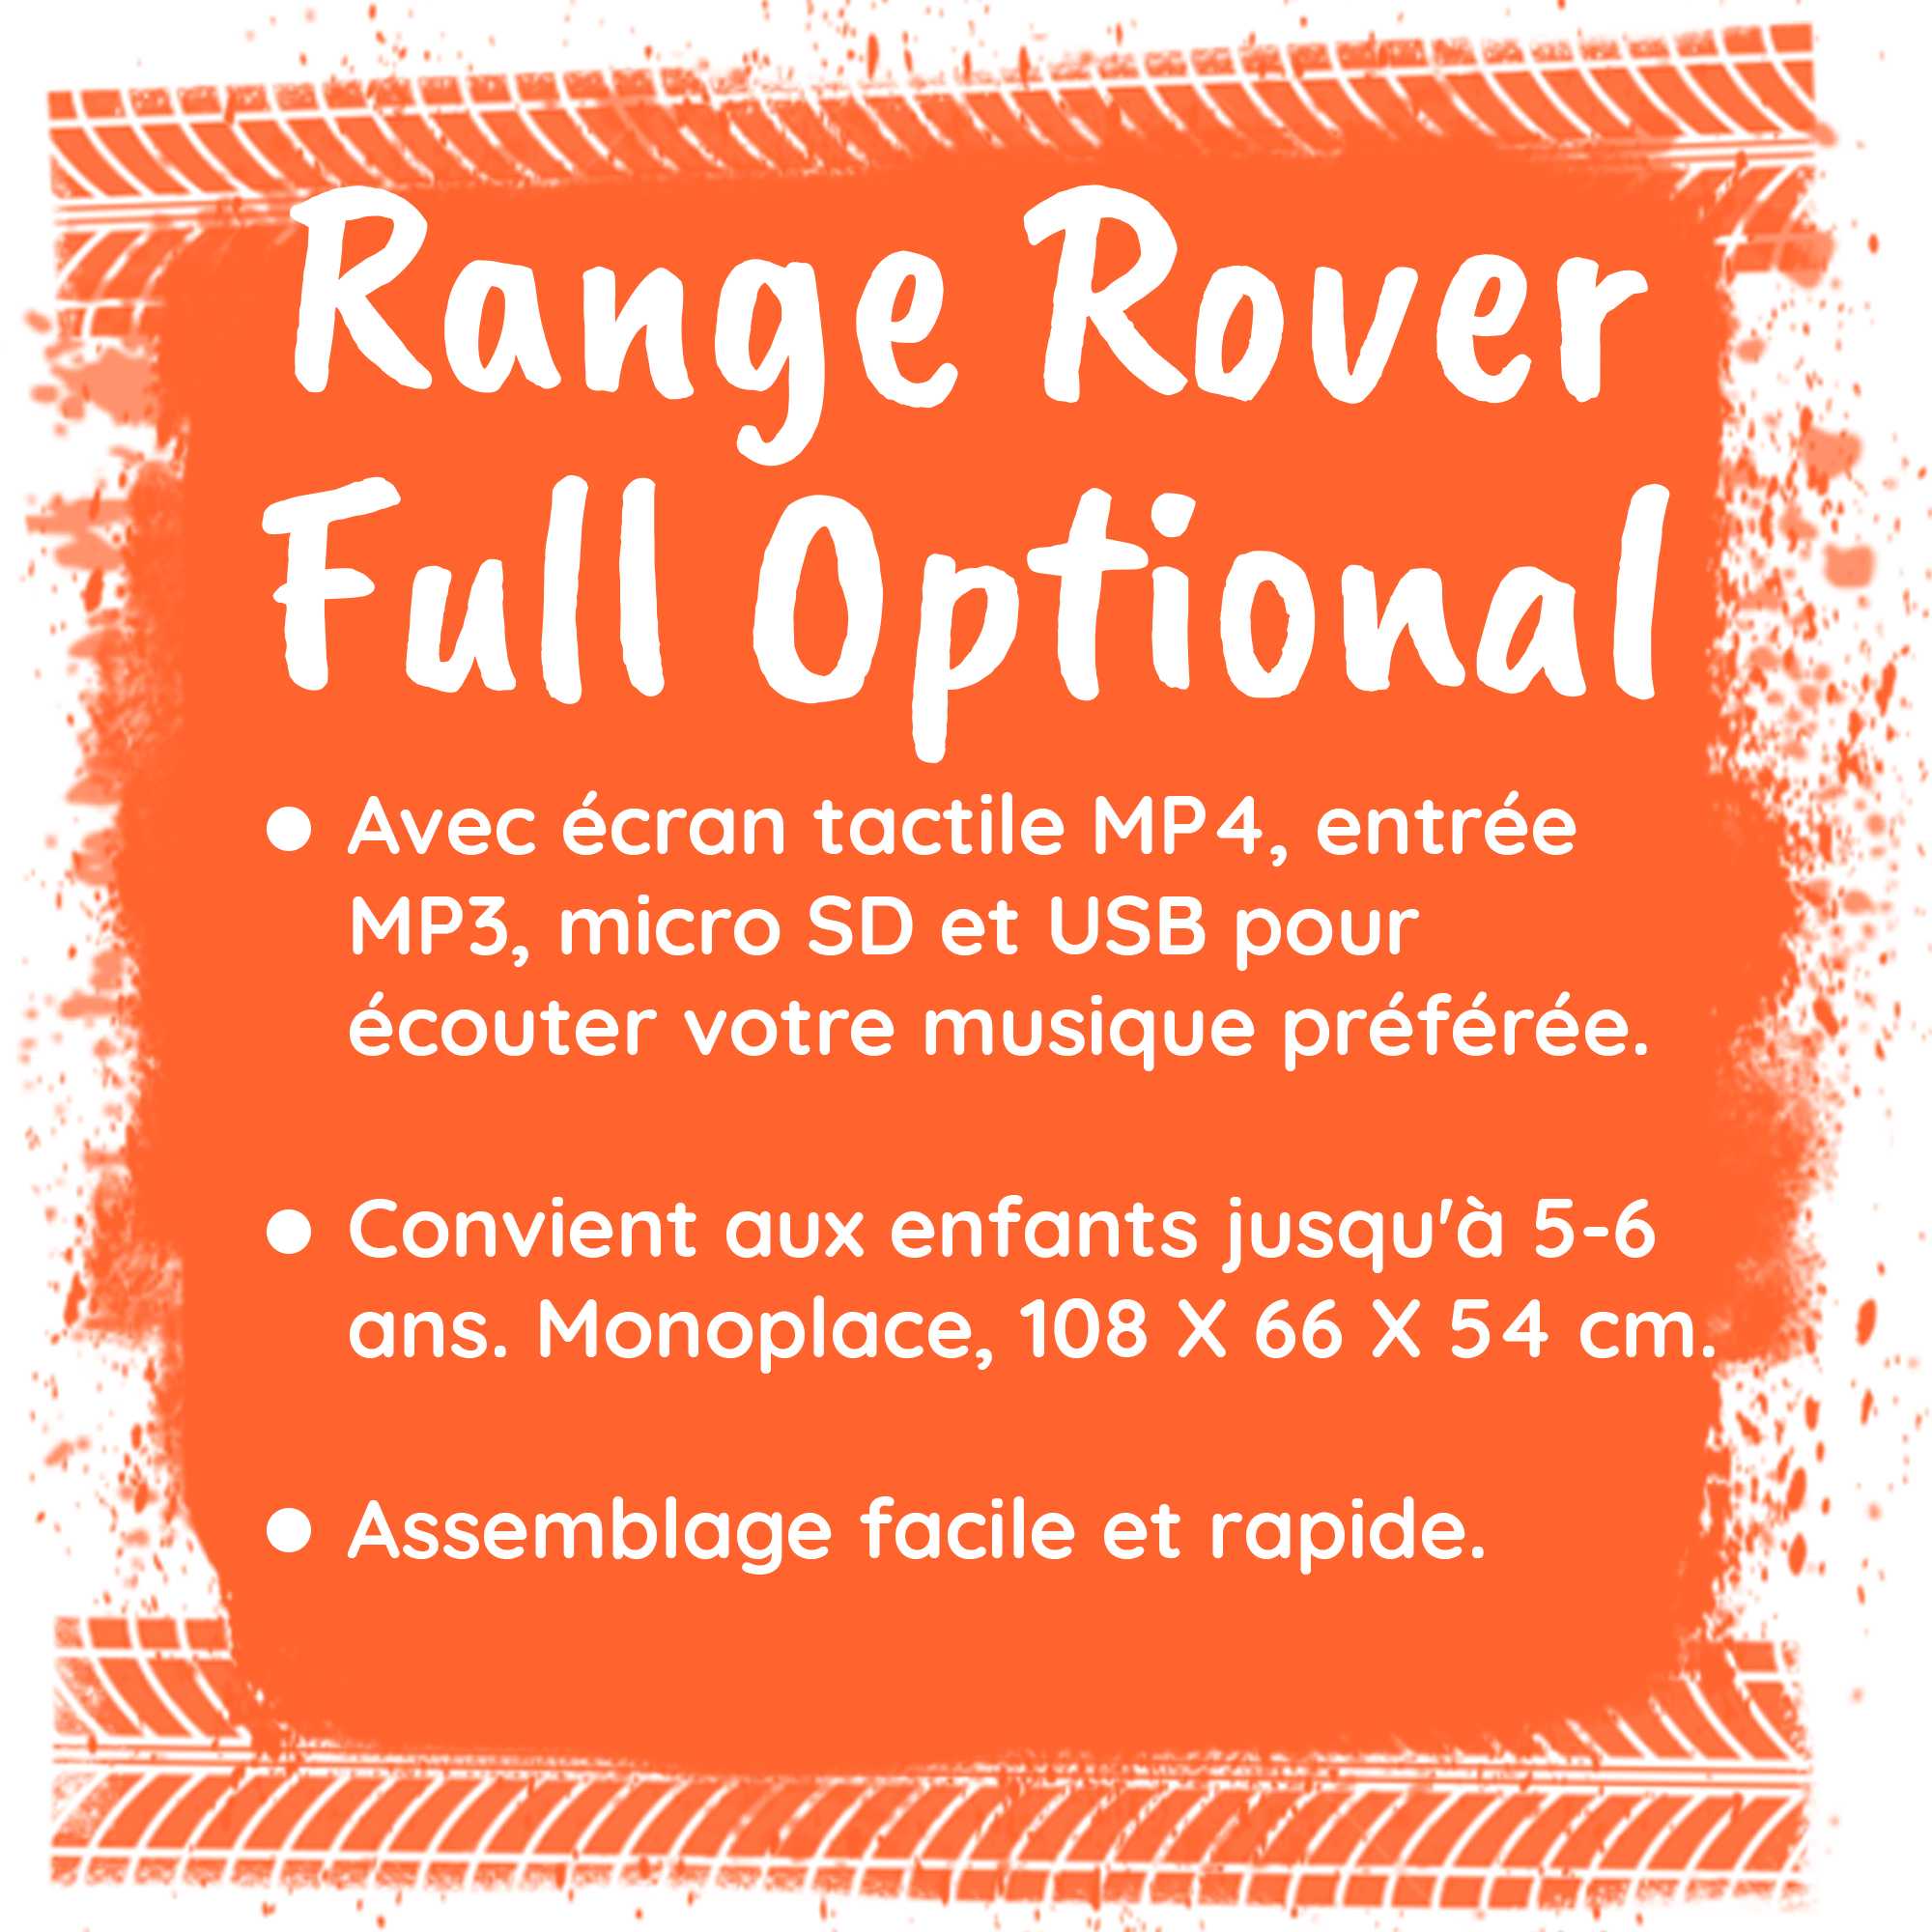 Range rover toy full optional 